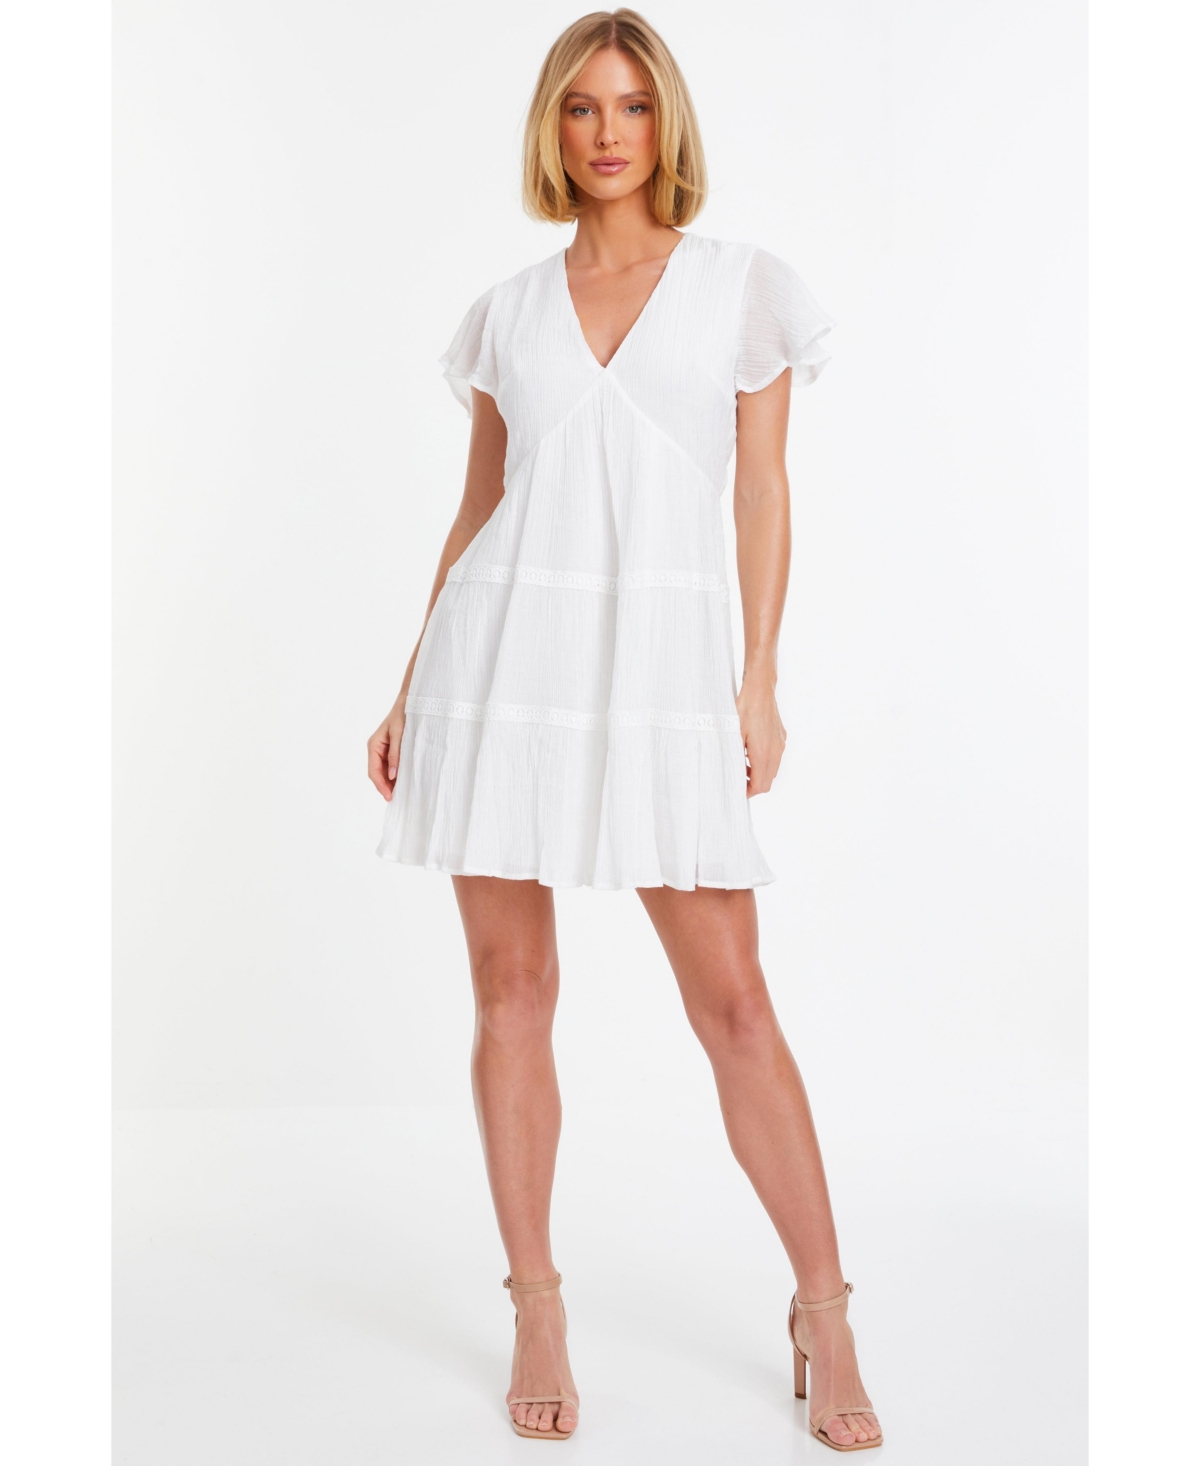 Women's V-Neck Frill Sleeve Tunic Dress - White